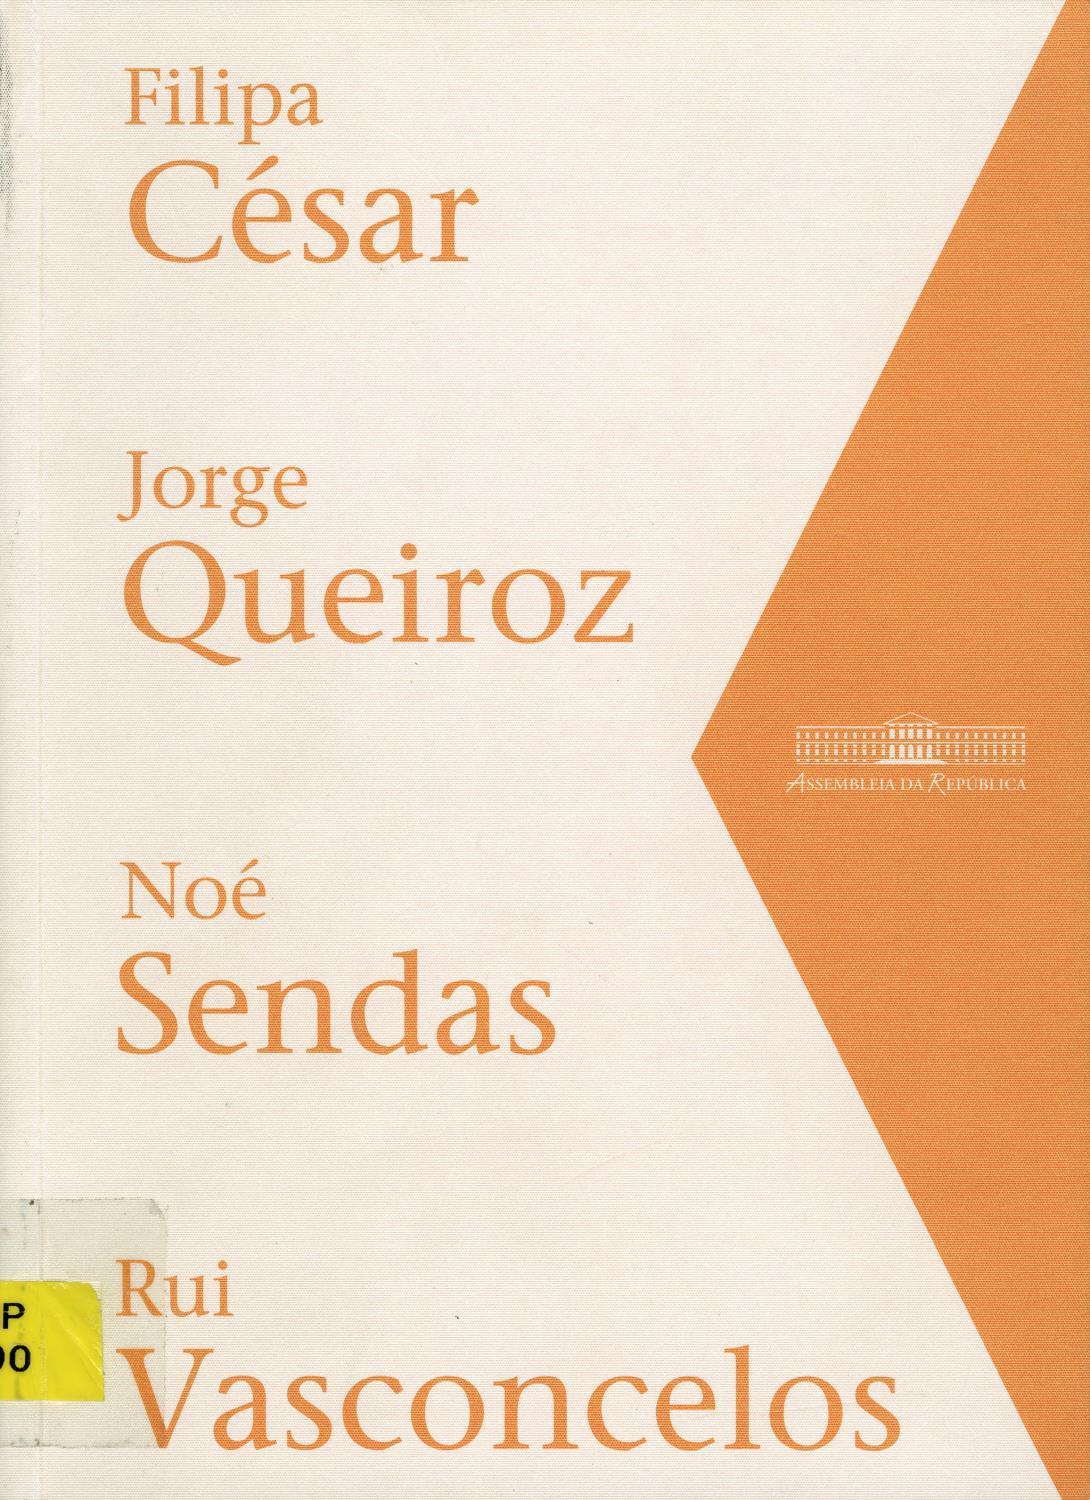 Arte Contemporânea na Assembleia. Filipe César, Jorge Queirós, Noé Sendas, Rui Vasconcelos. Abril/Maio 2004